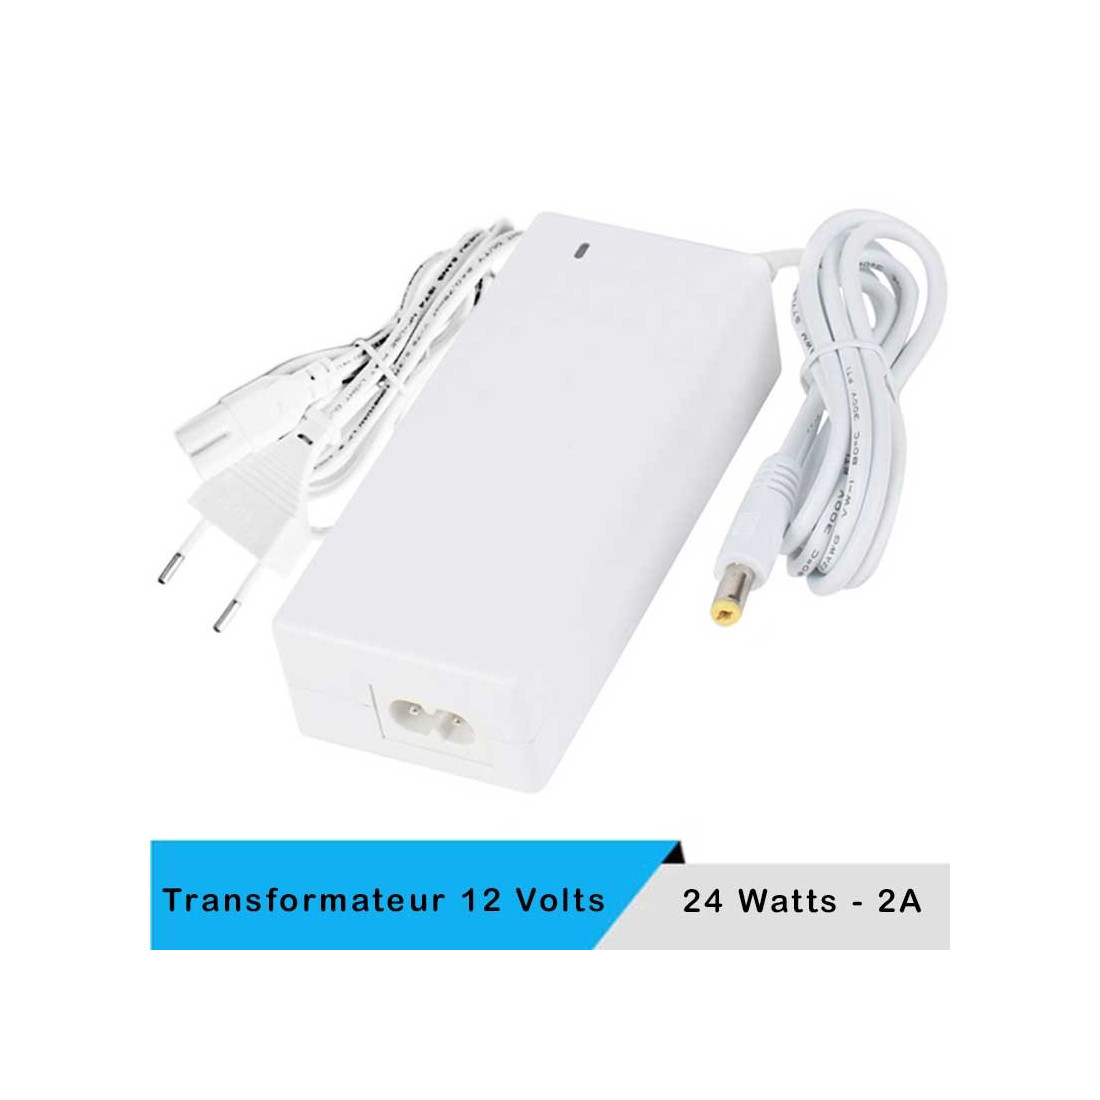 Transformateur LED 12 volts 24 watts blanc + câble secteur